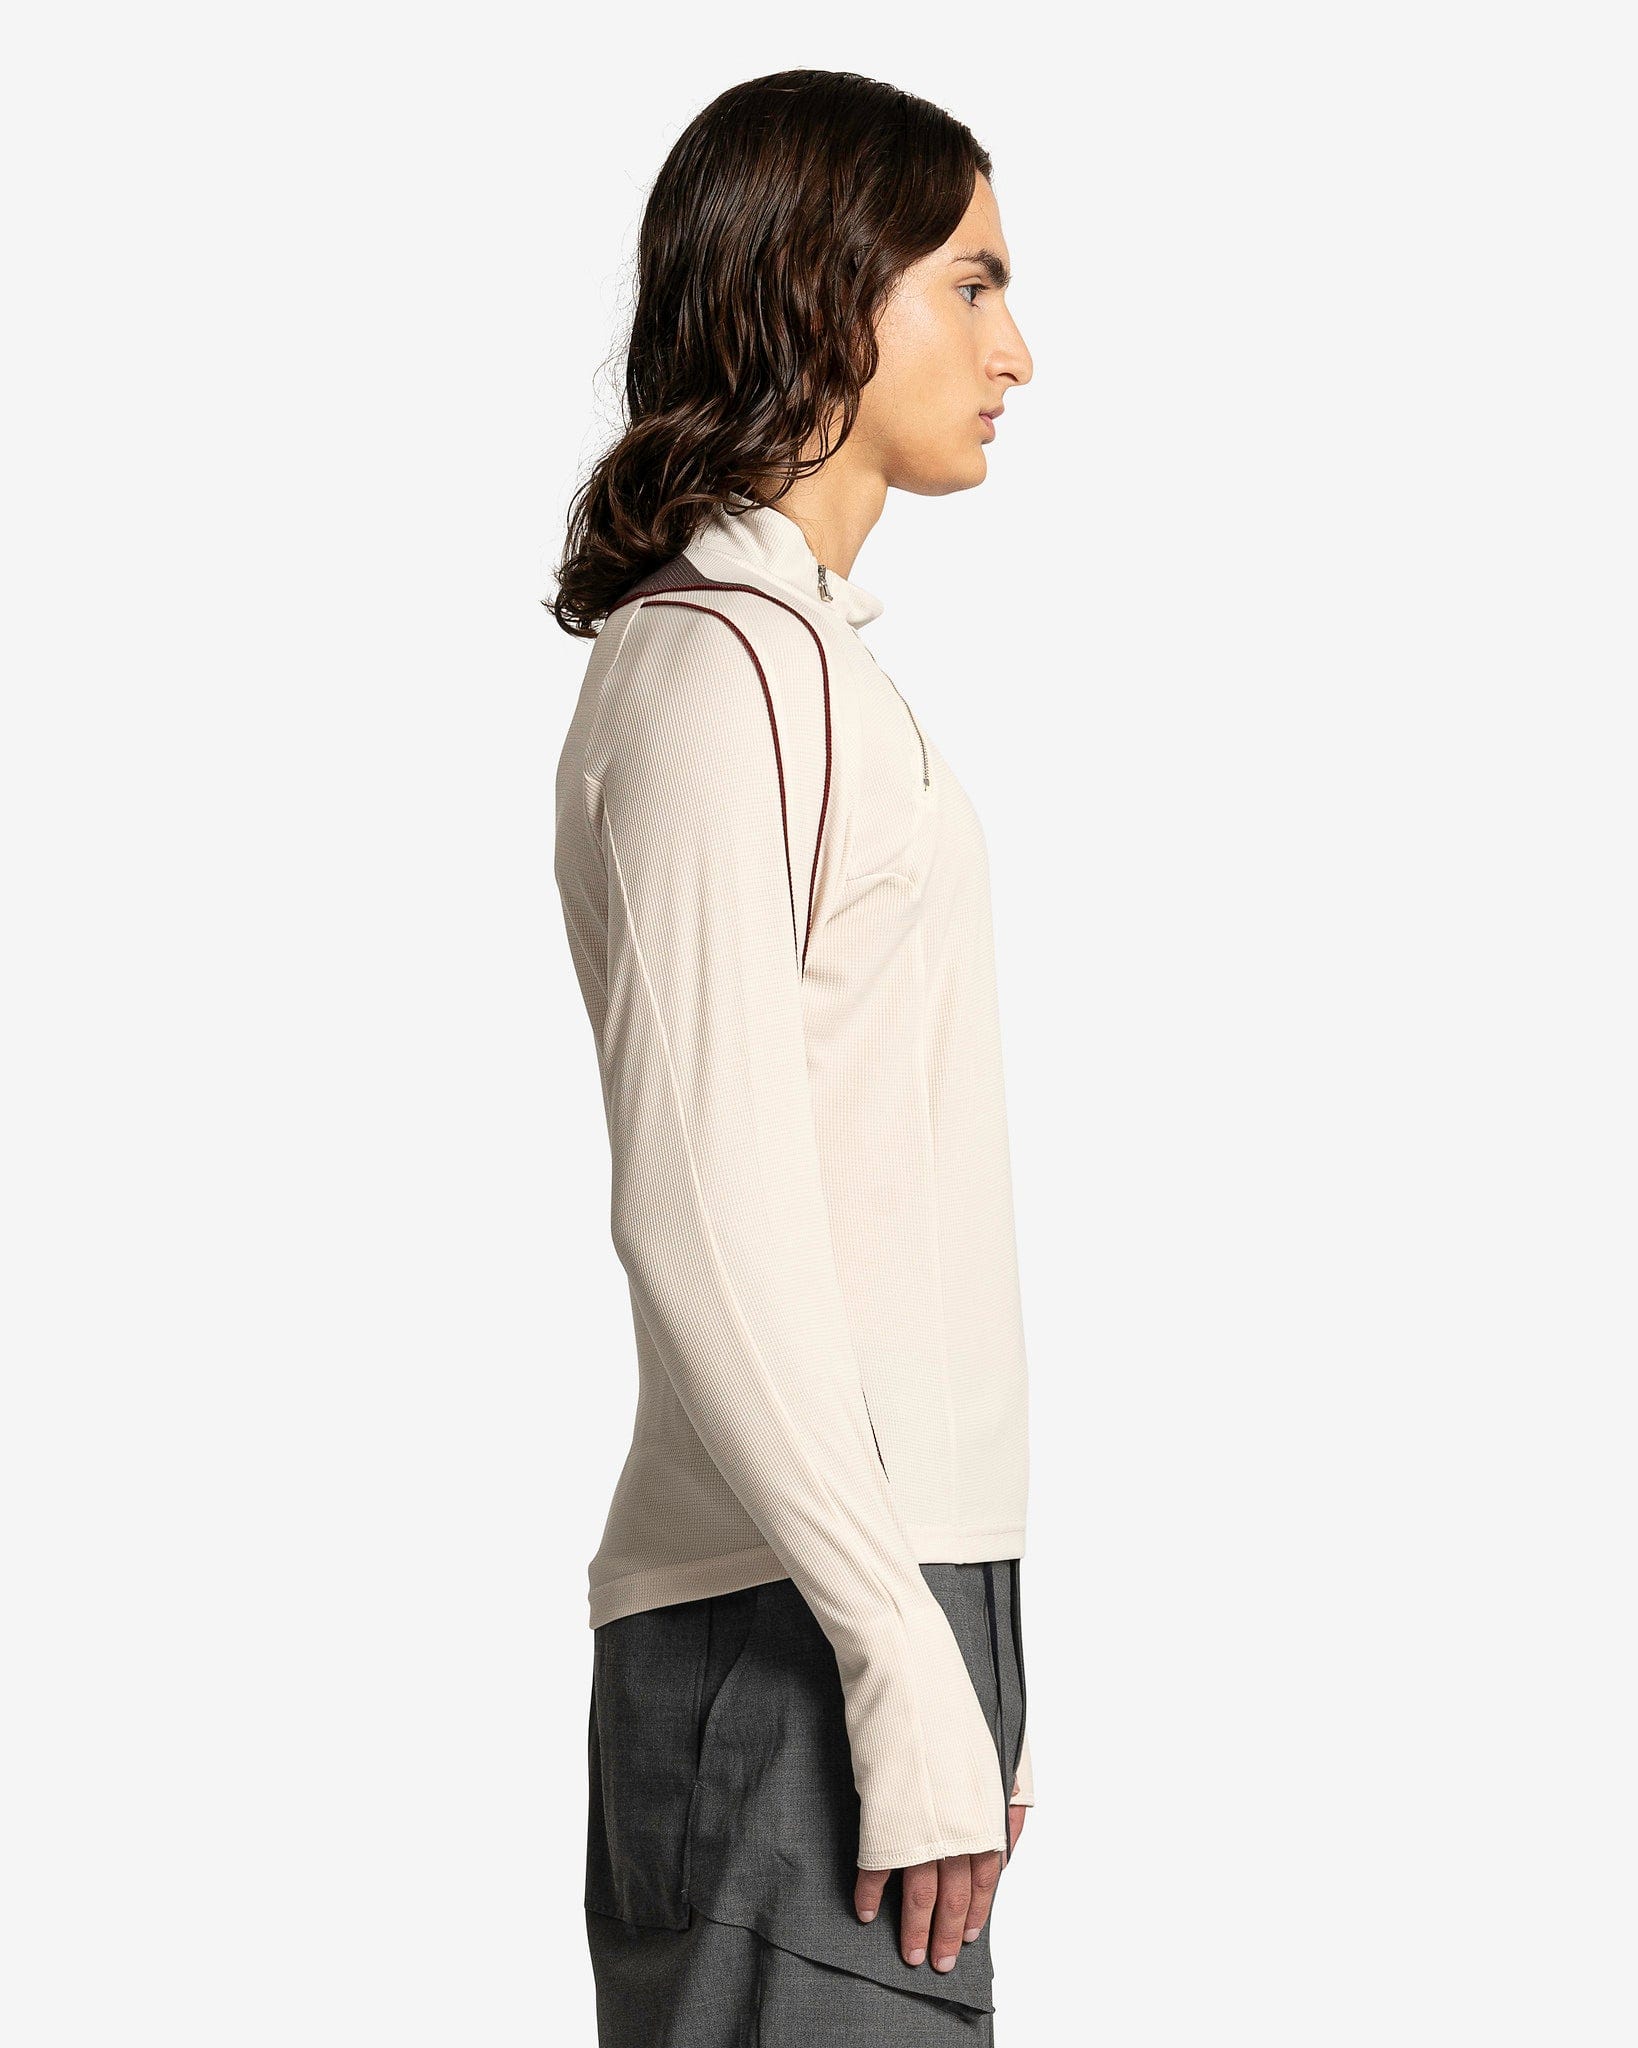 CMMAWEAR Men's T-Shirts Dual Zip Long Sleeve in Beige/Brown